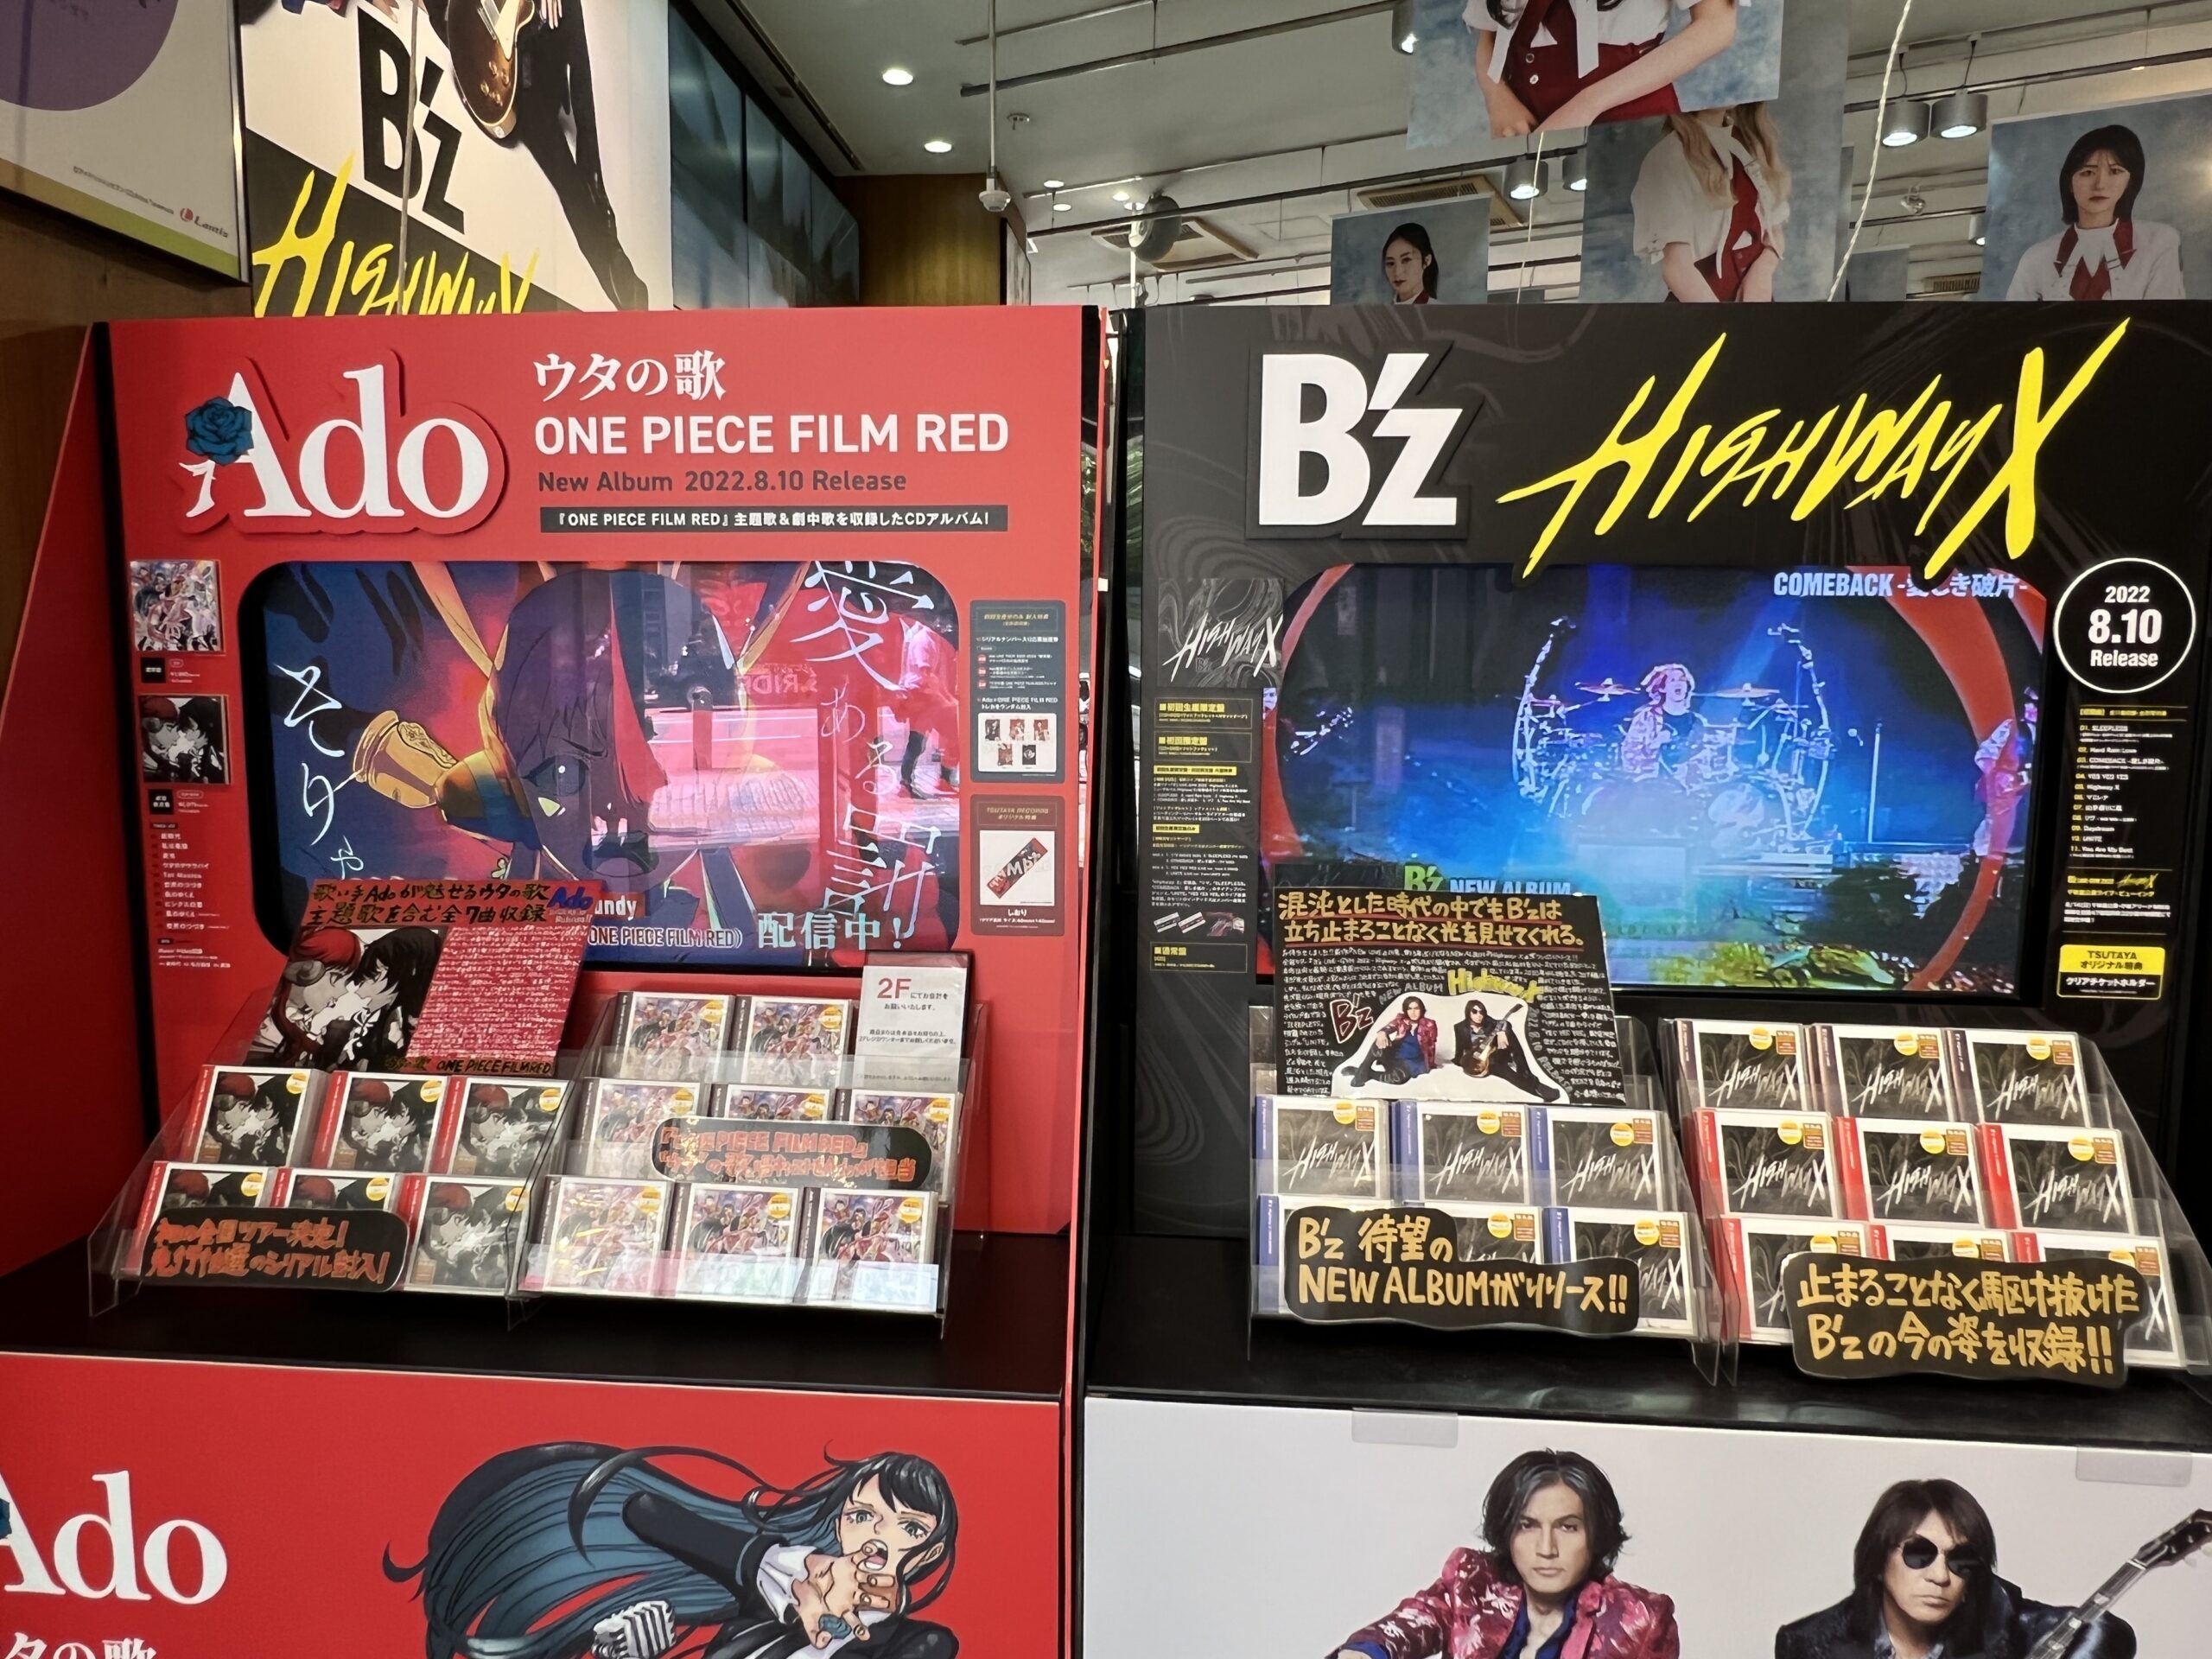 B'z『Highway X』とAdo『ウタの歌 ONE PIECE FILM RED』が店頭に並んでいる写真